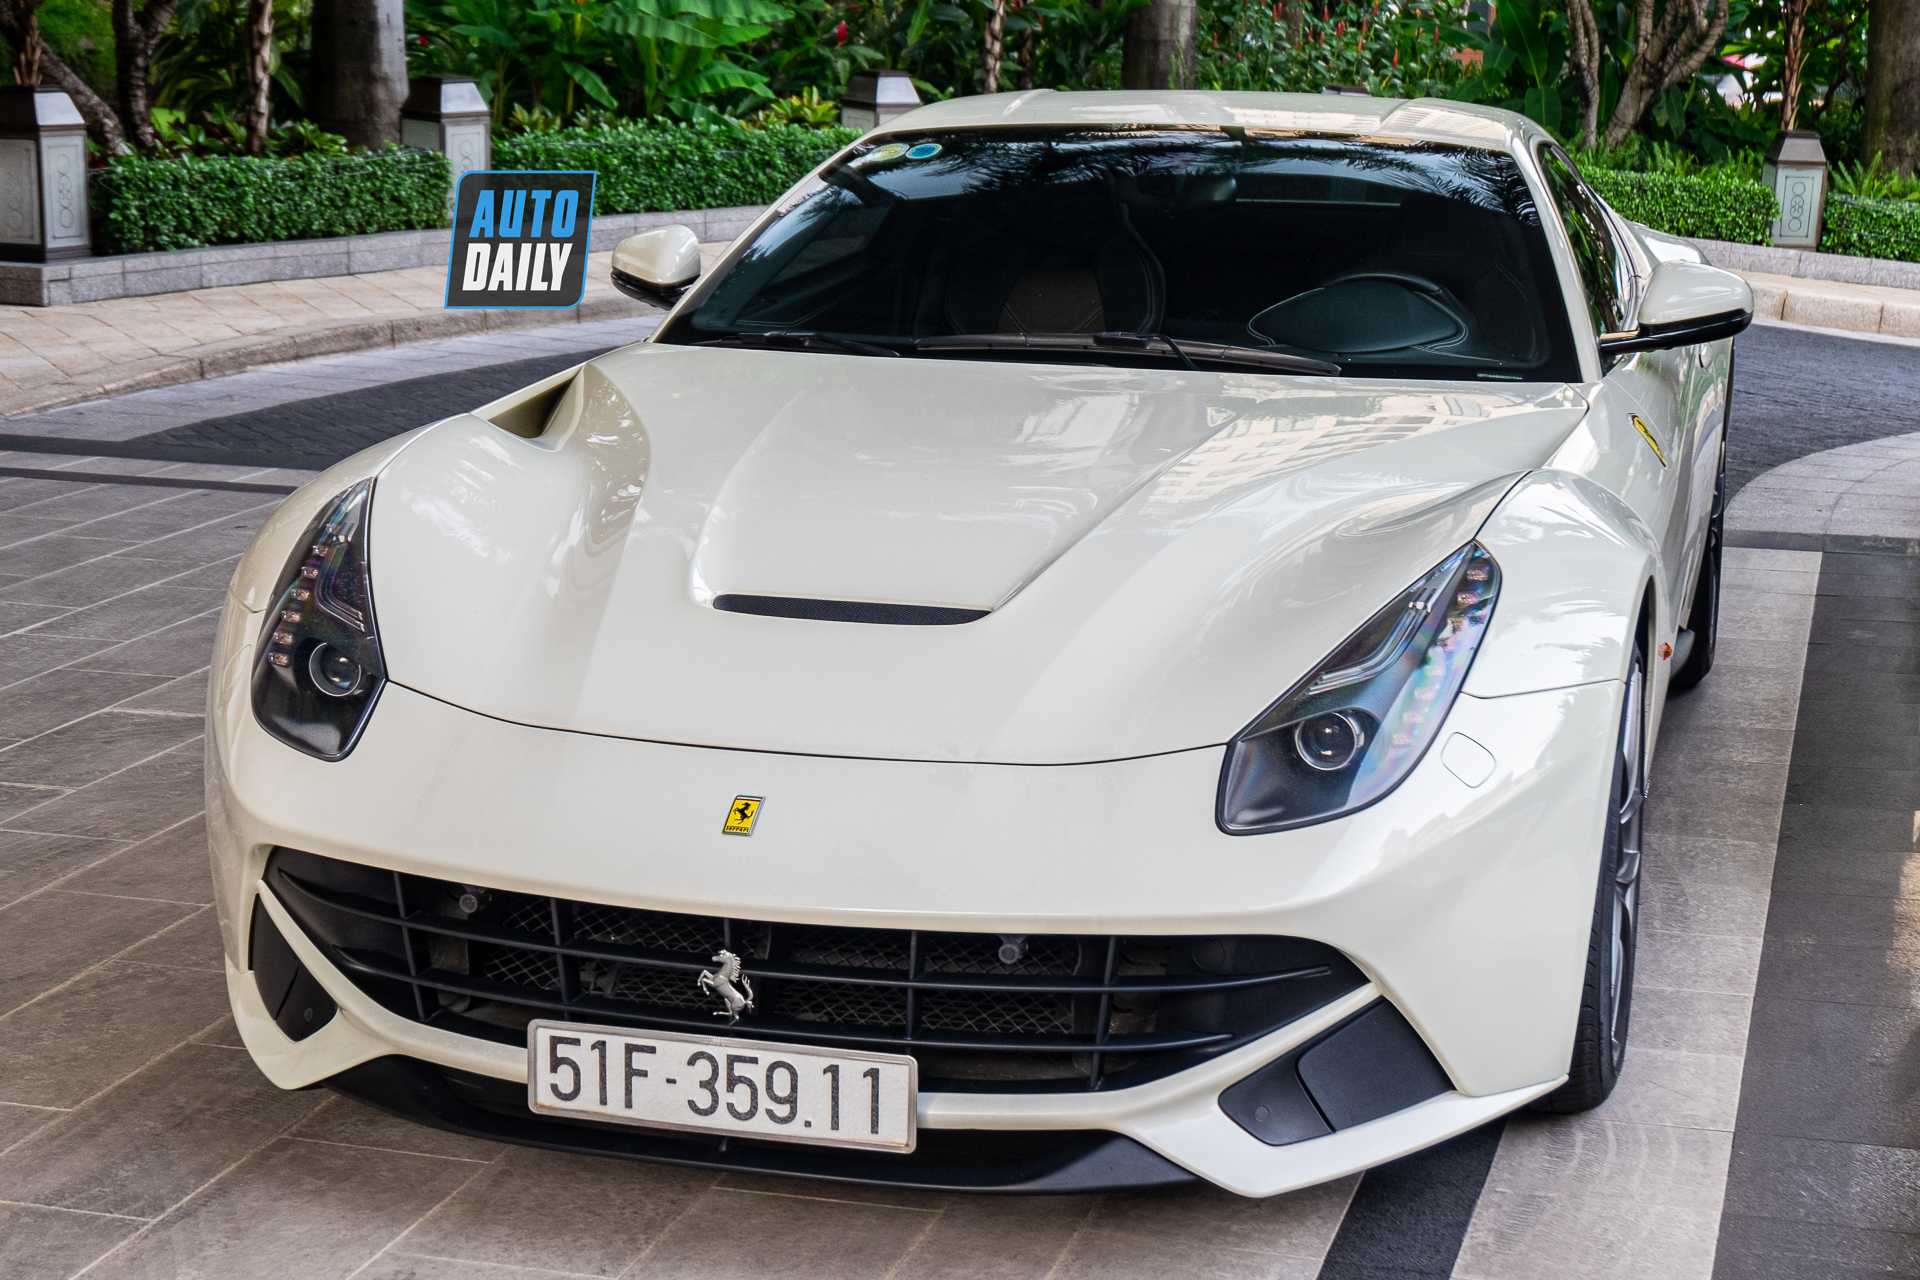 Ferrari F12 màu trắng độc nhất Việt Nam tái xuất trên phố, 6 năm chạy vỏn vẹn 255 km ferrari-f12-berlinetta-mau-trang-doc-nhat-cafeautovn-13.JPG